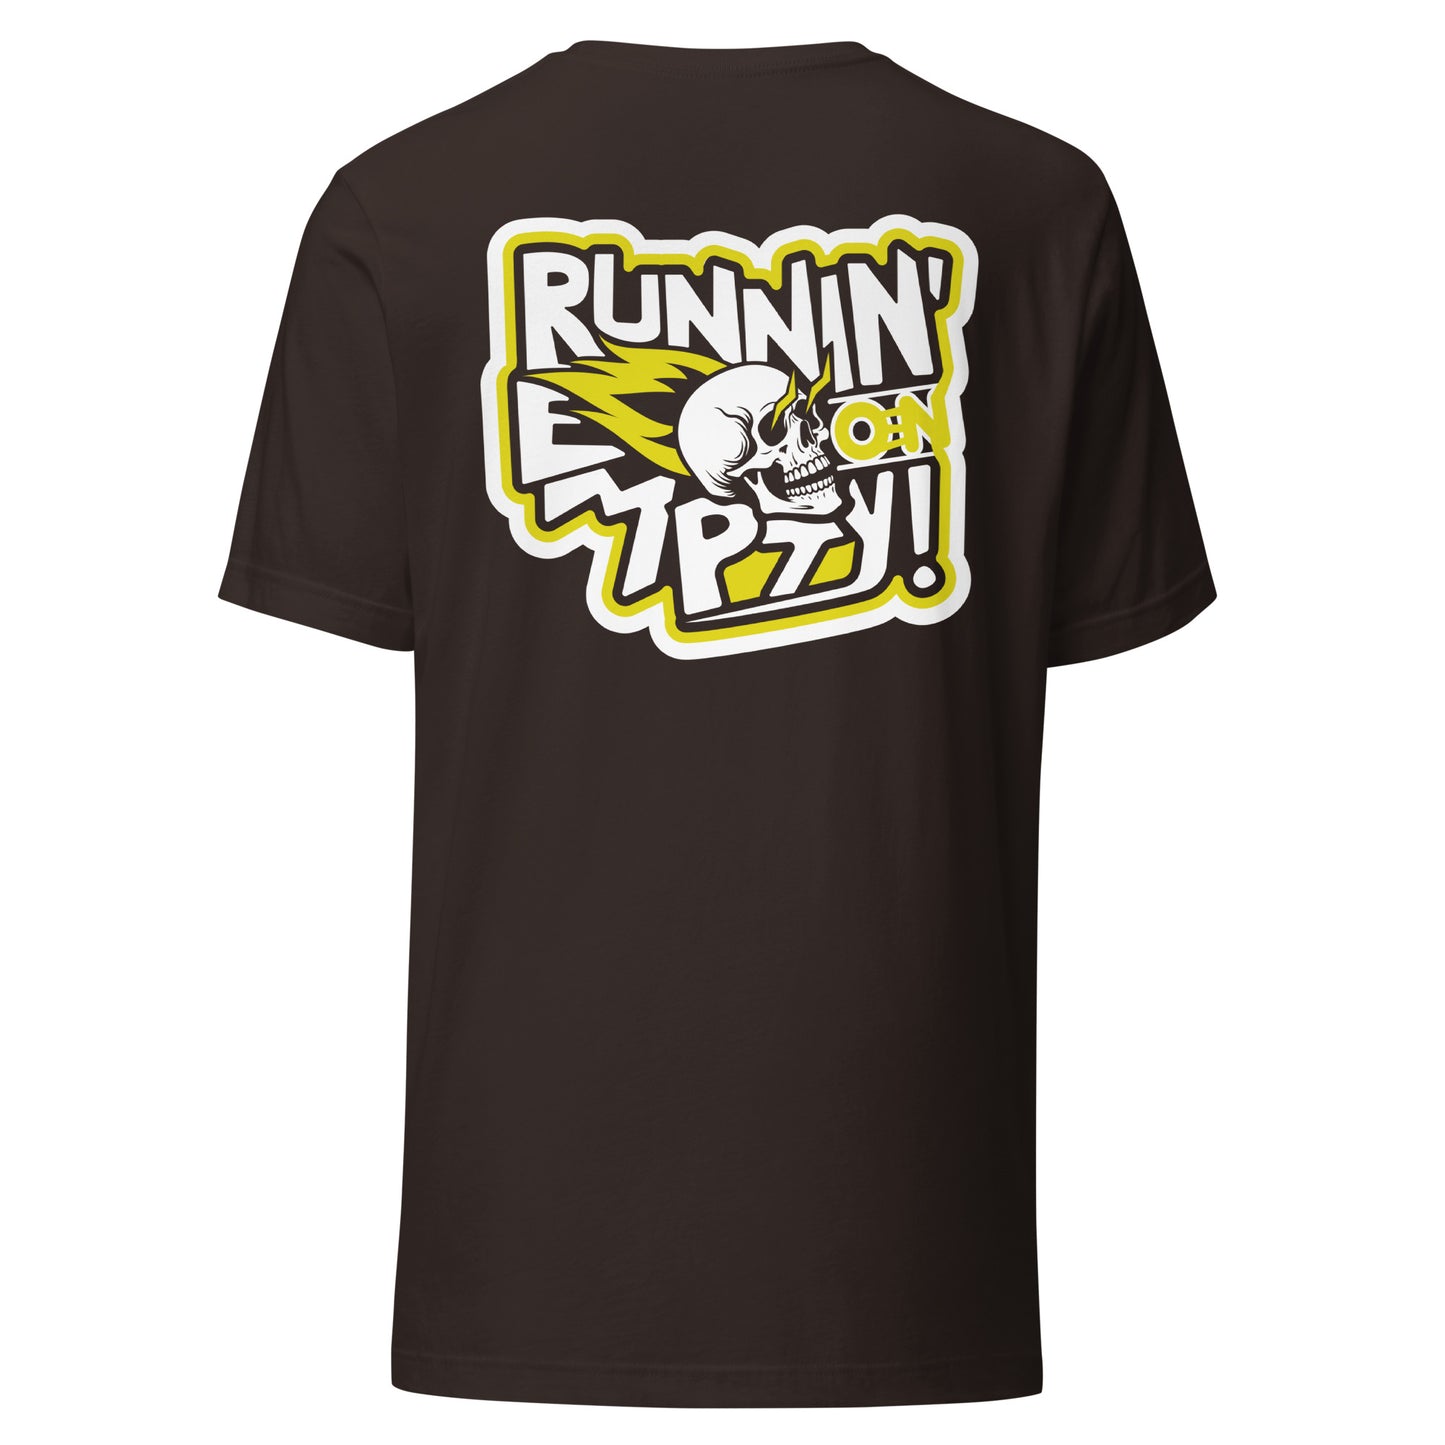 Runnin' on Empty T-Shirt